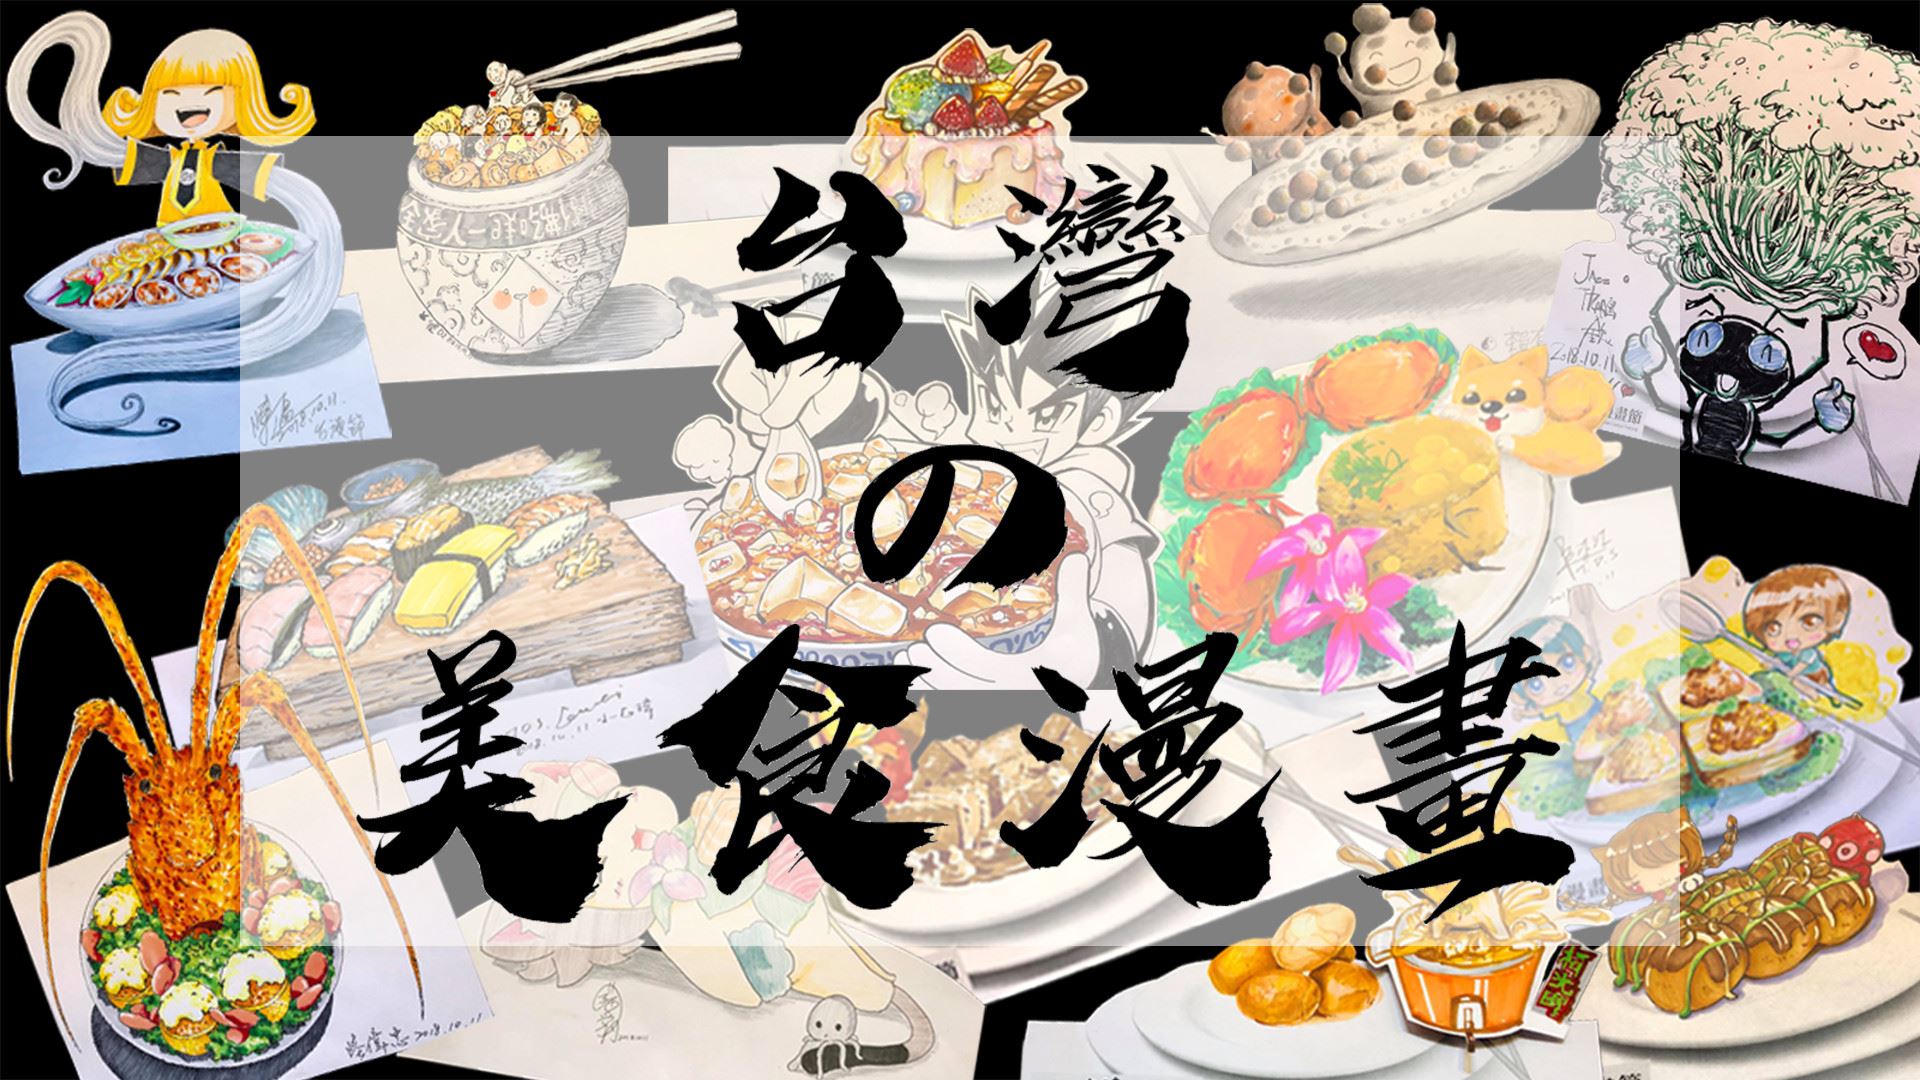 [閒聊] 台灣有人畫過料理漫畫嗎